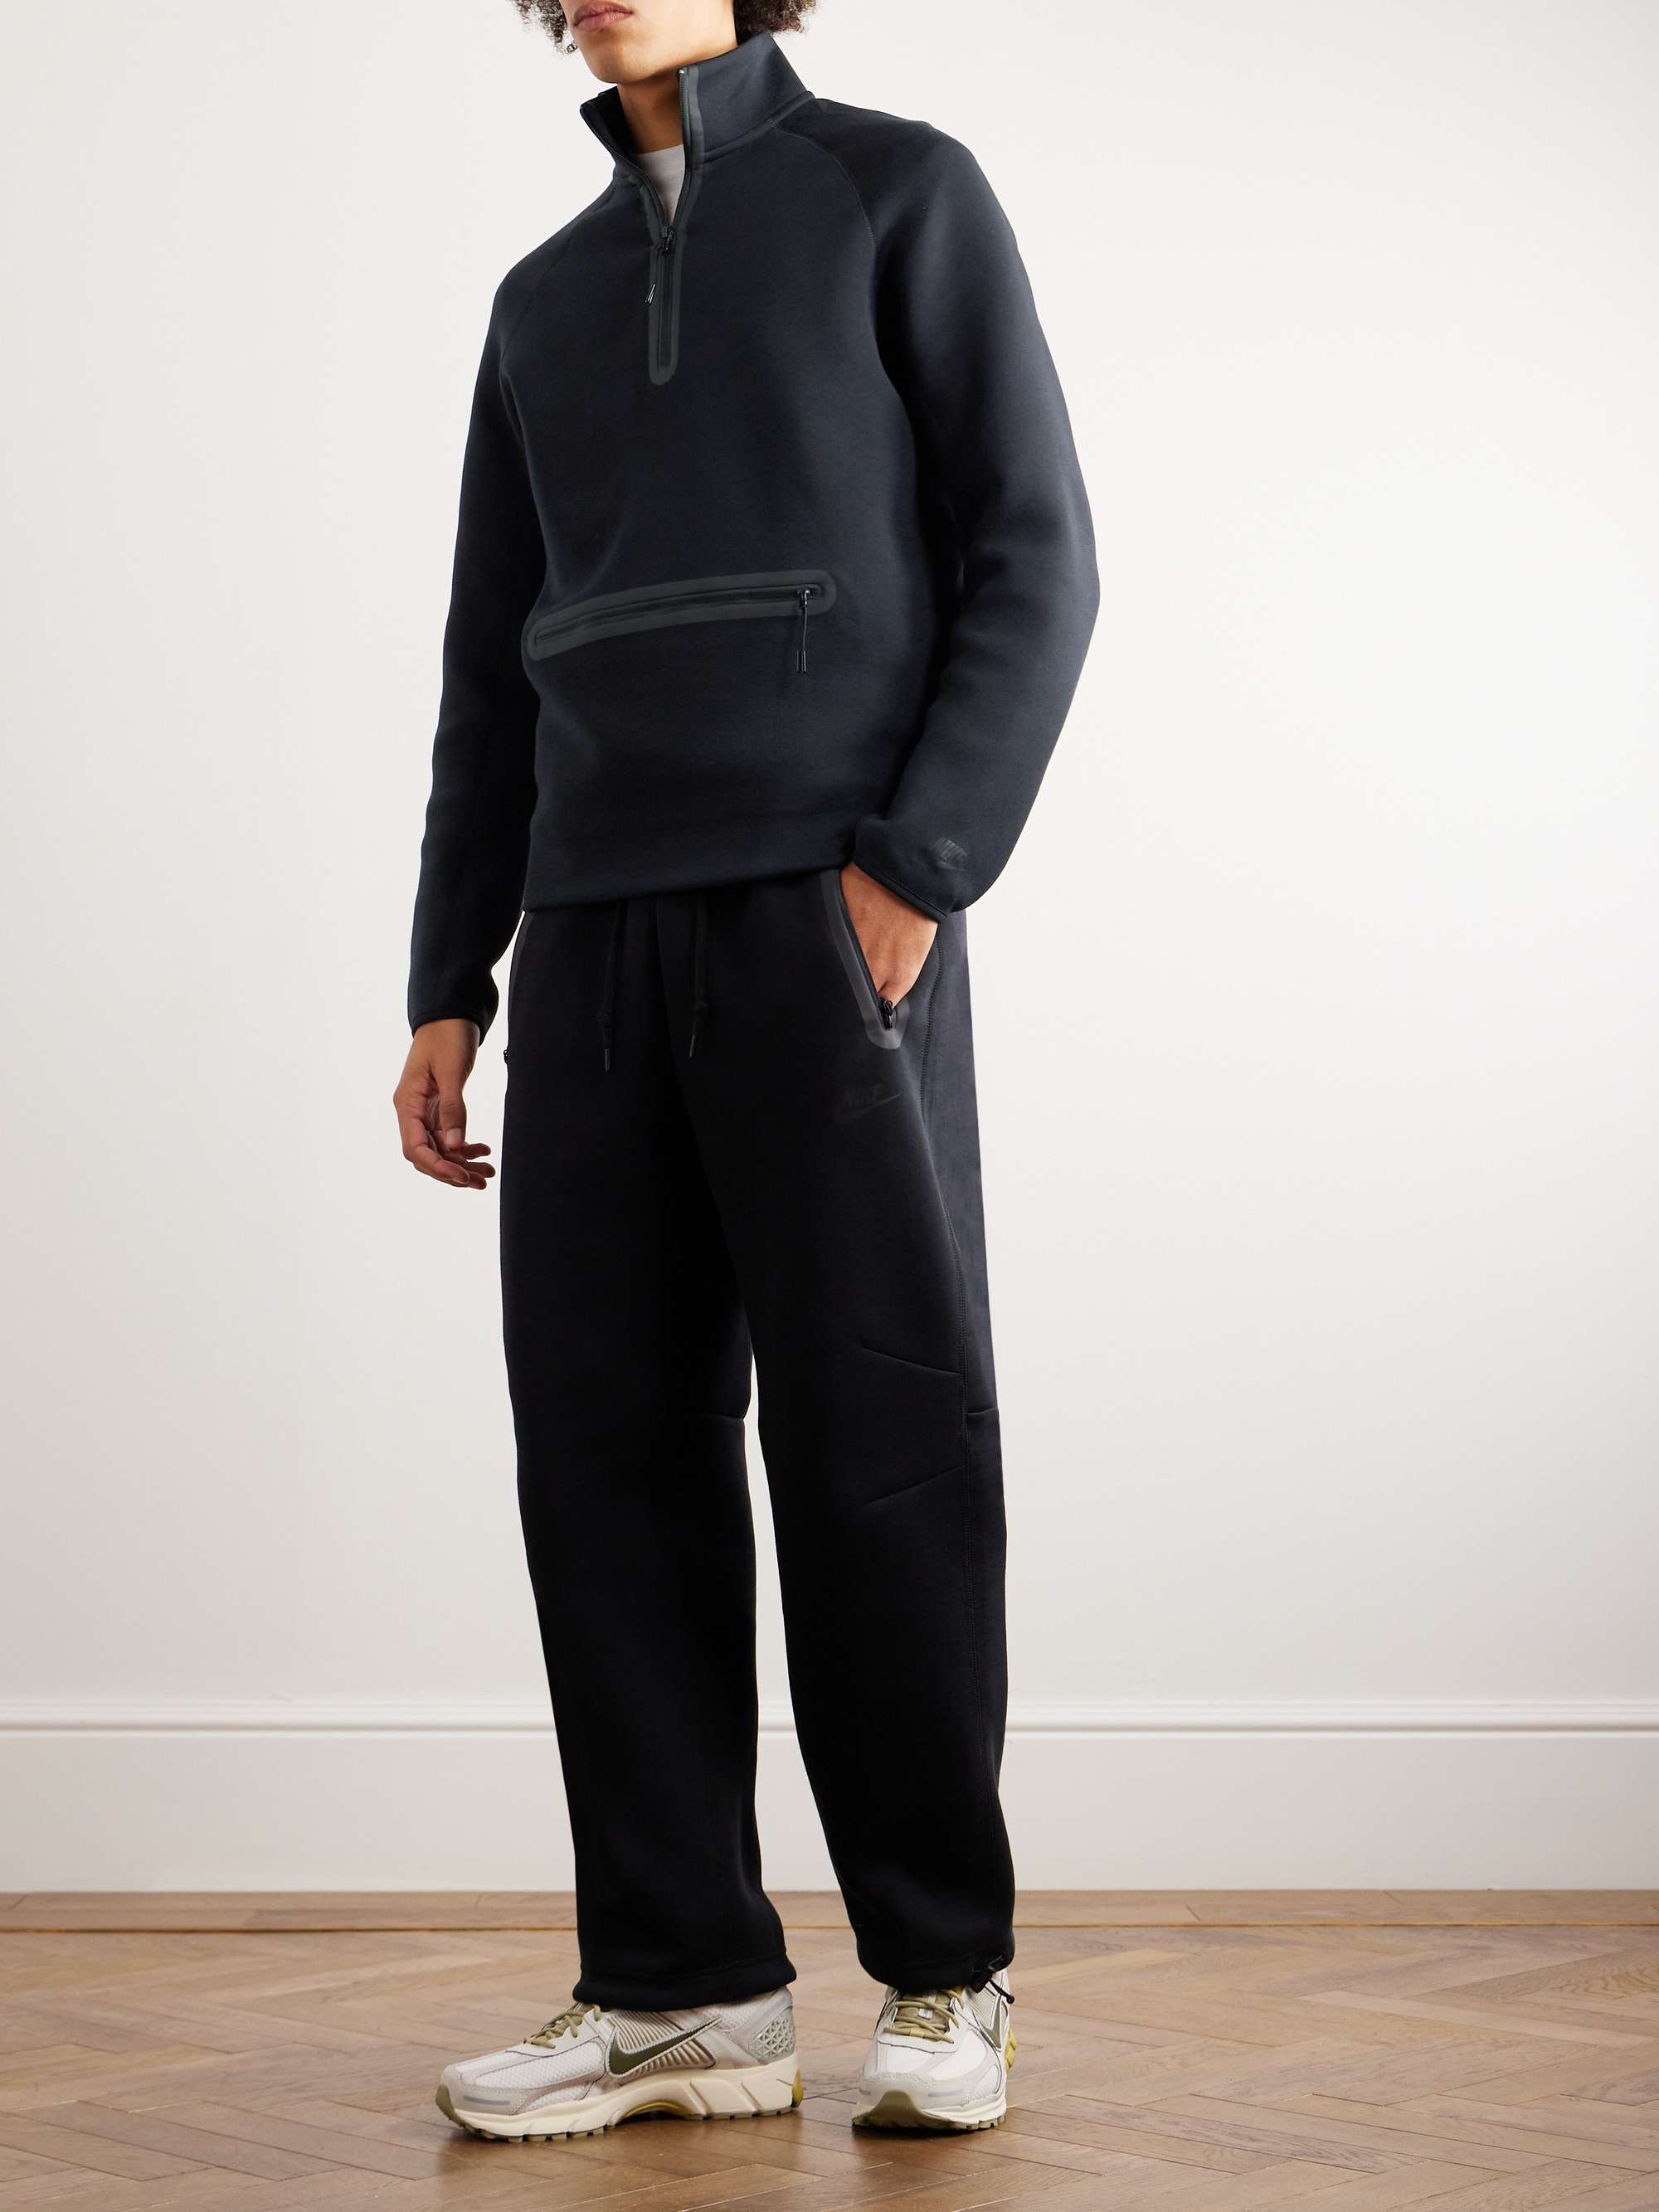 NIKE Cotton-Blend Jersey Half-Zip Sweatshirt for Men | MR PORTER